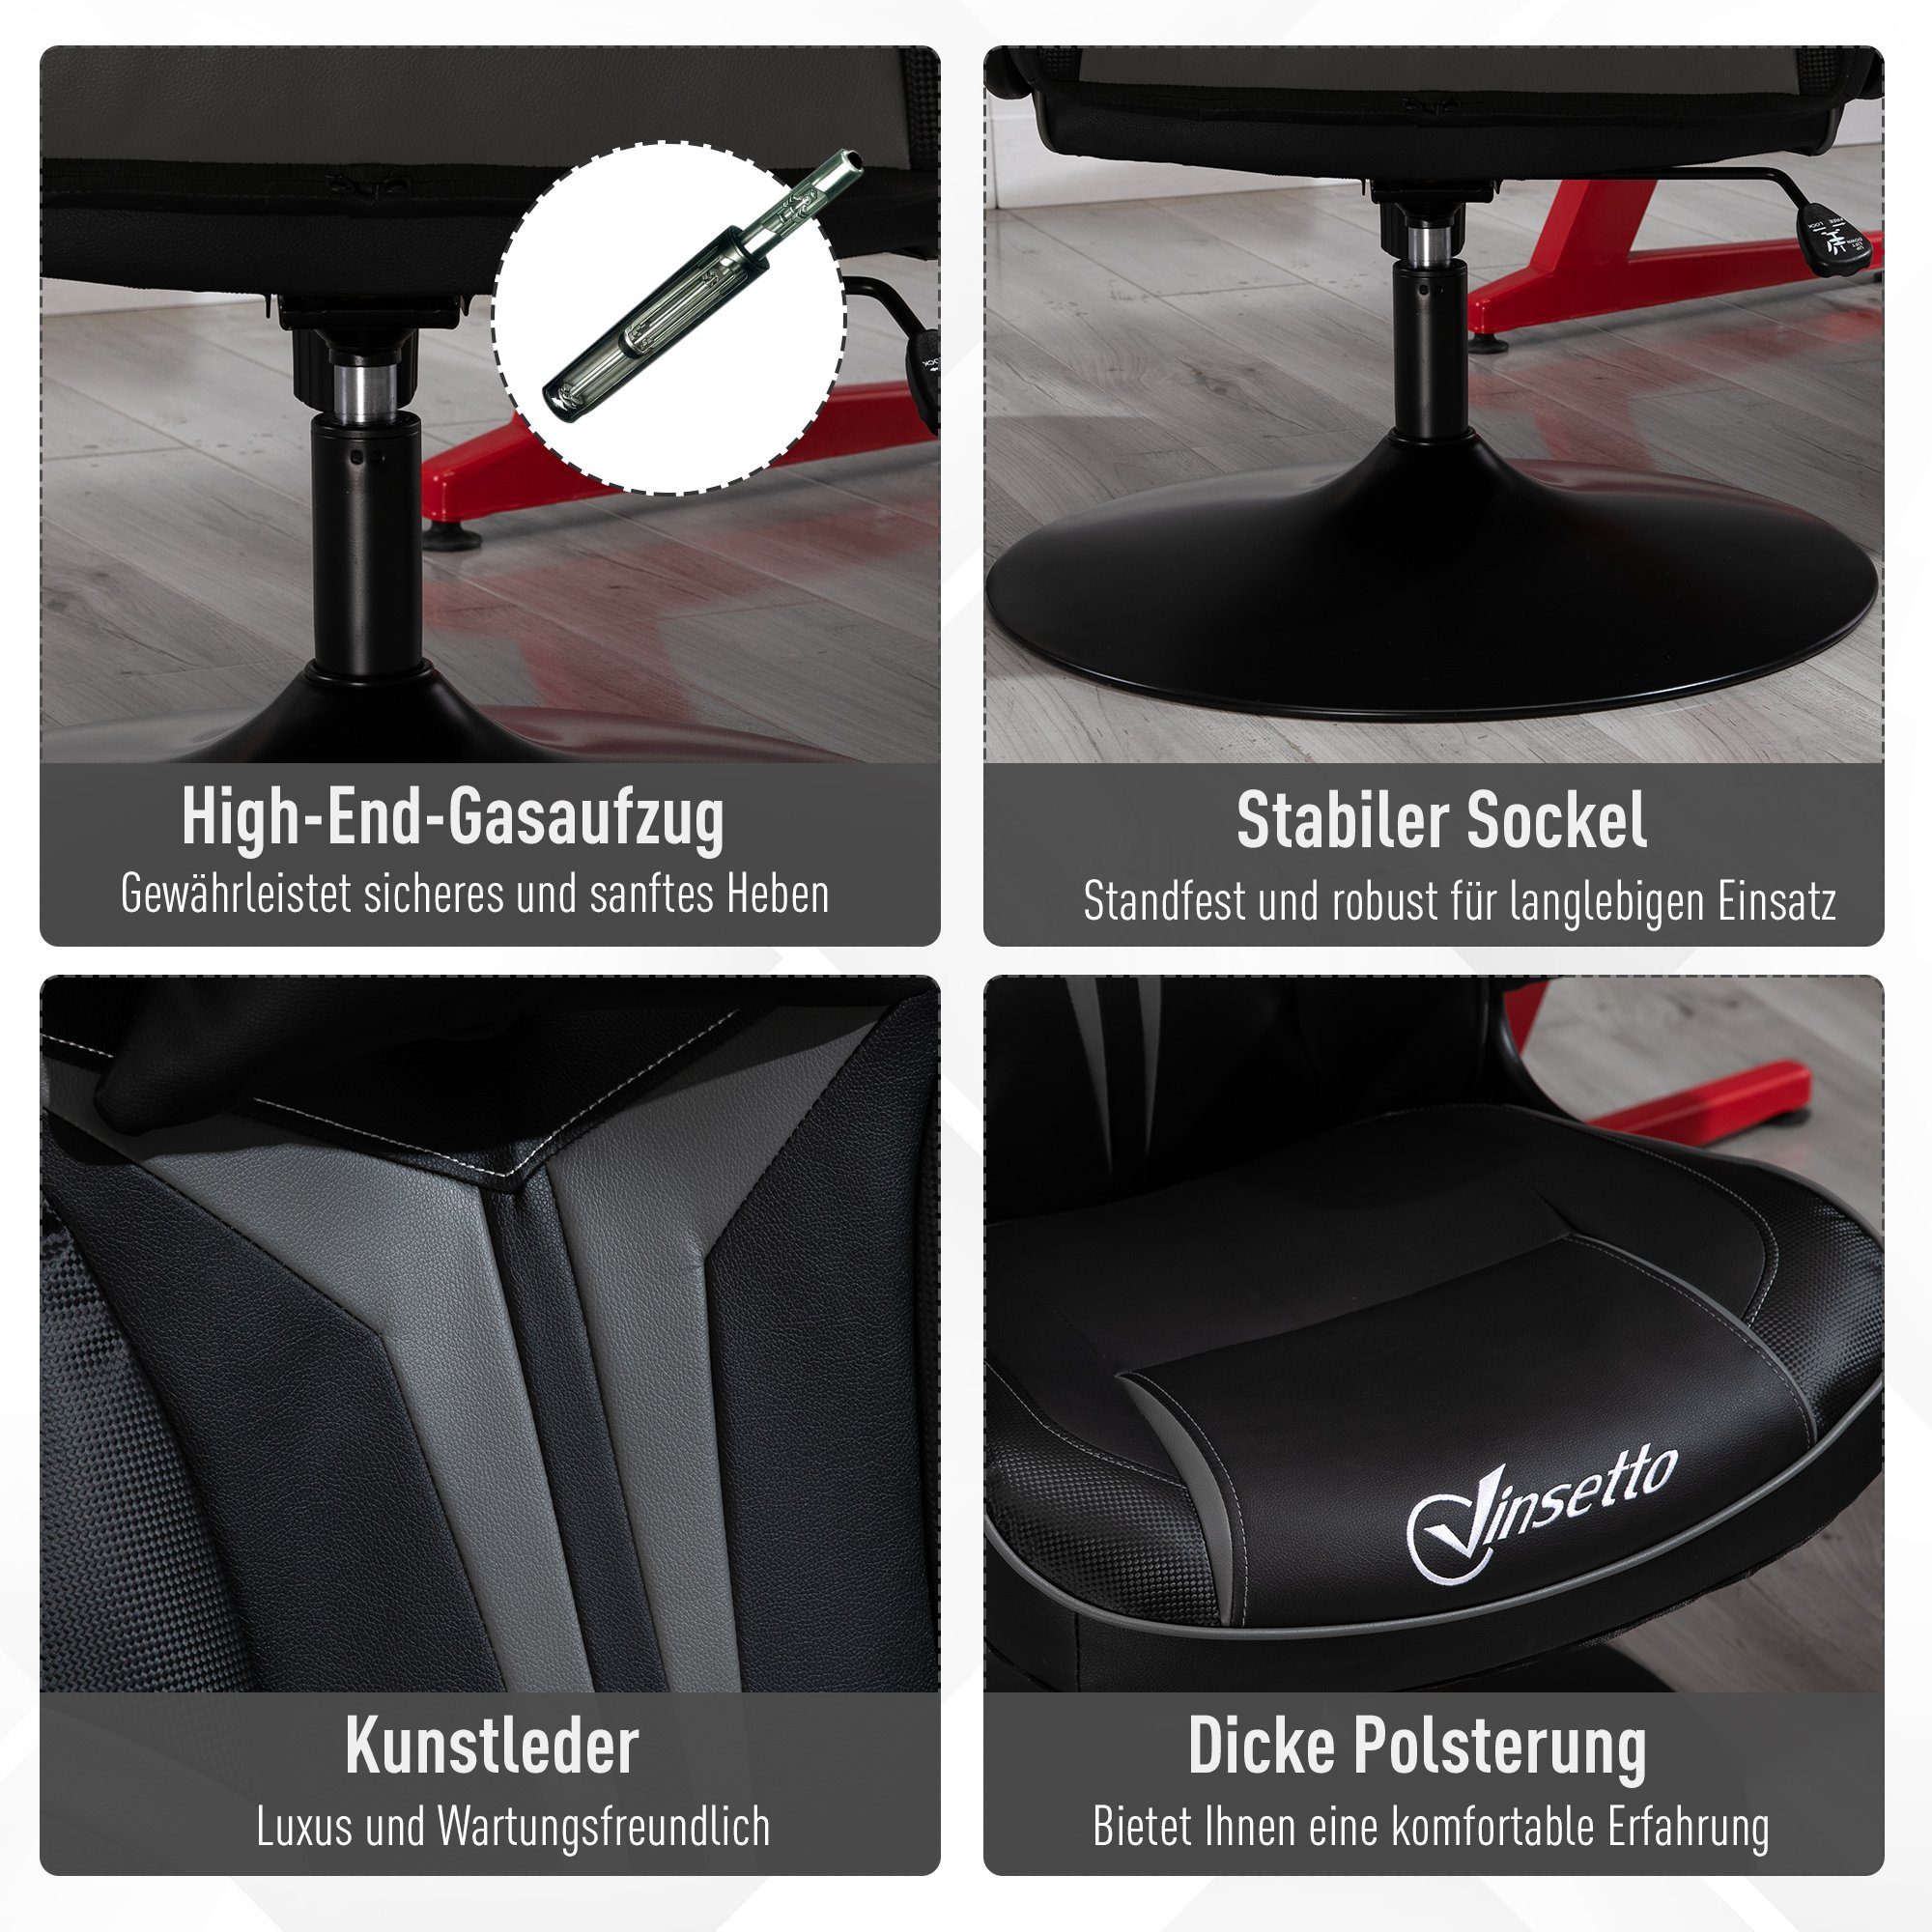 Vinsetto Schreibtischstuhl Gaming Stuhl ergonomisch schwarz/grau | schwarz/grau